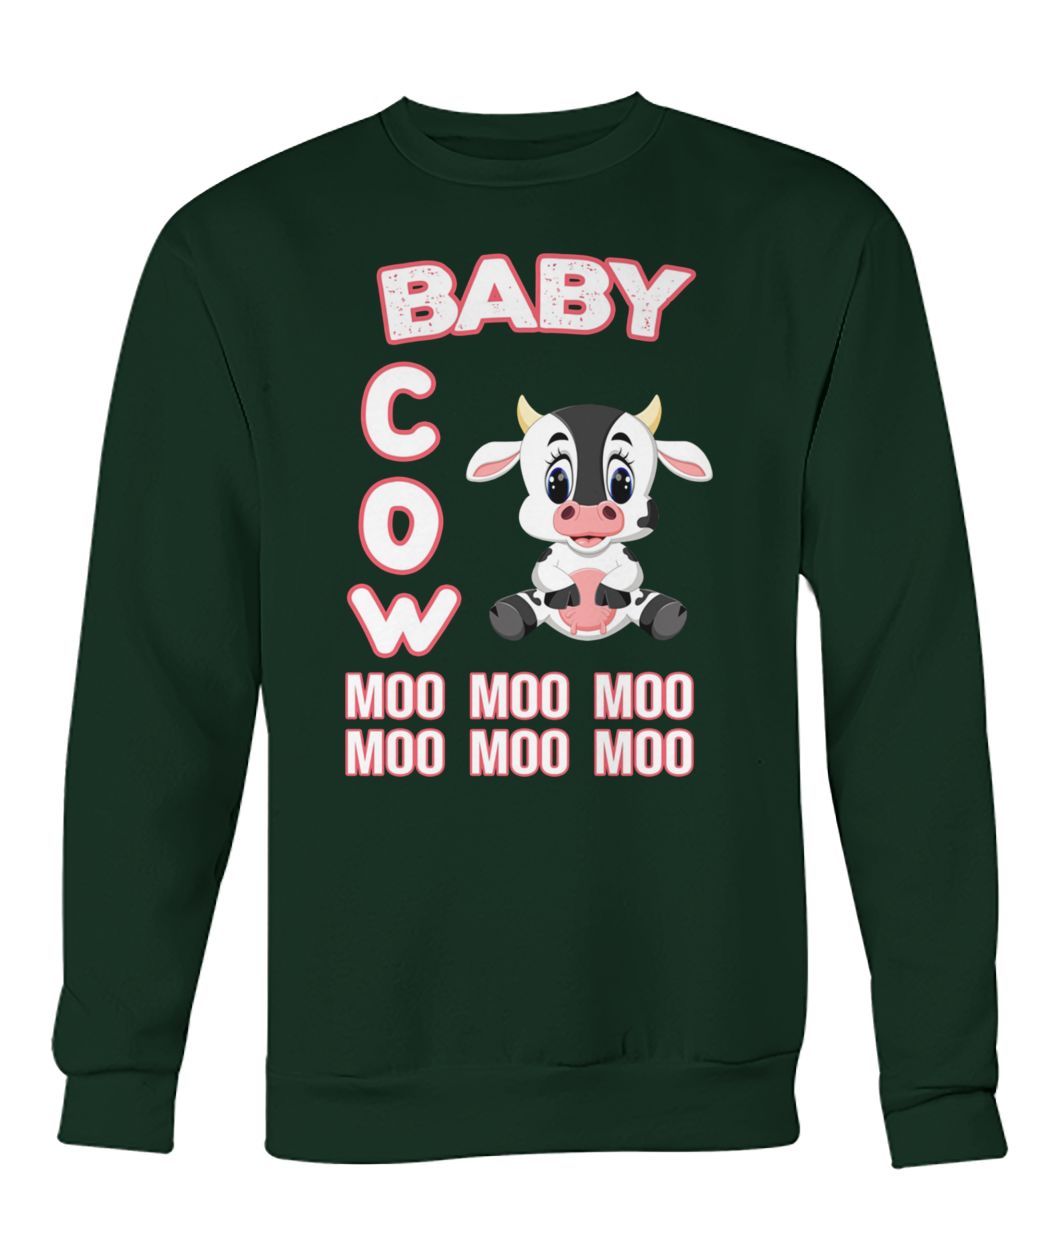 Baby cow moo moo moo crew neck sweatshirt